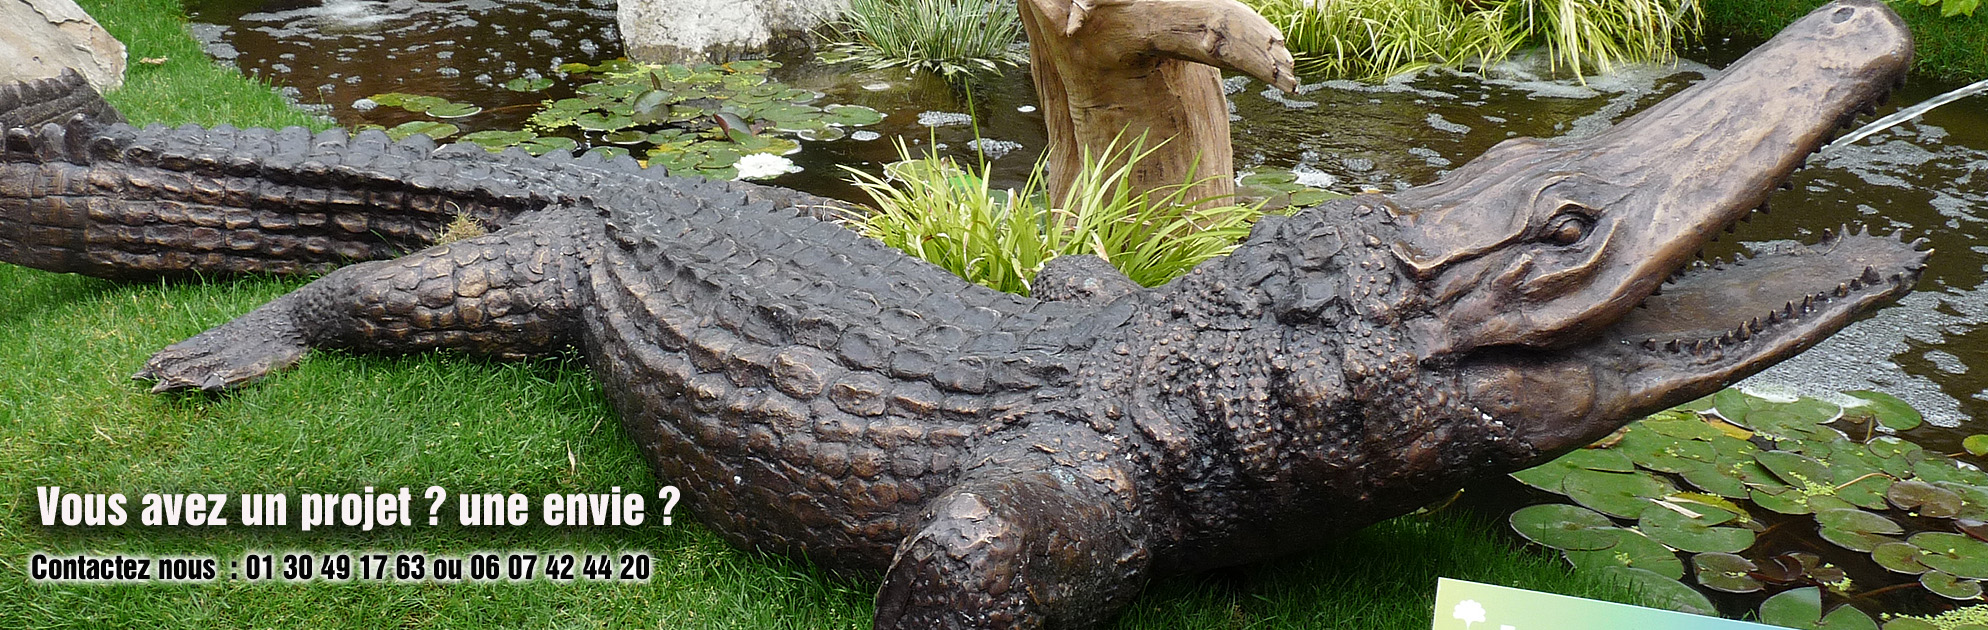 sculpture bronze crocodile